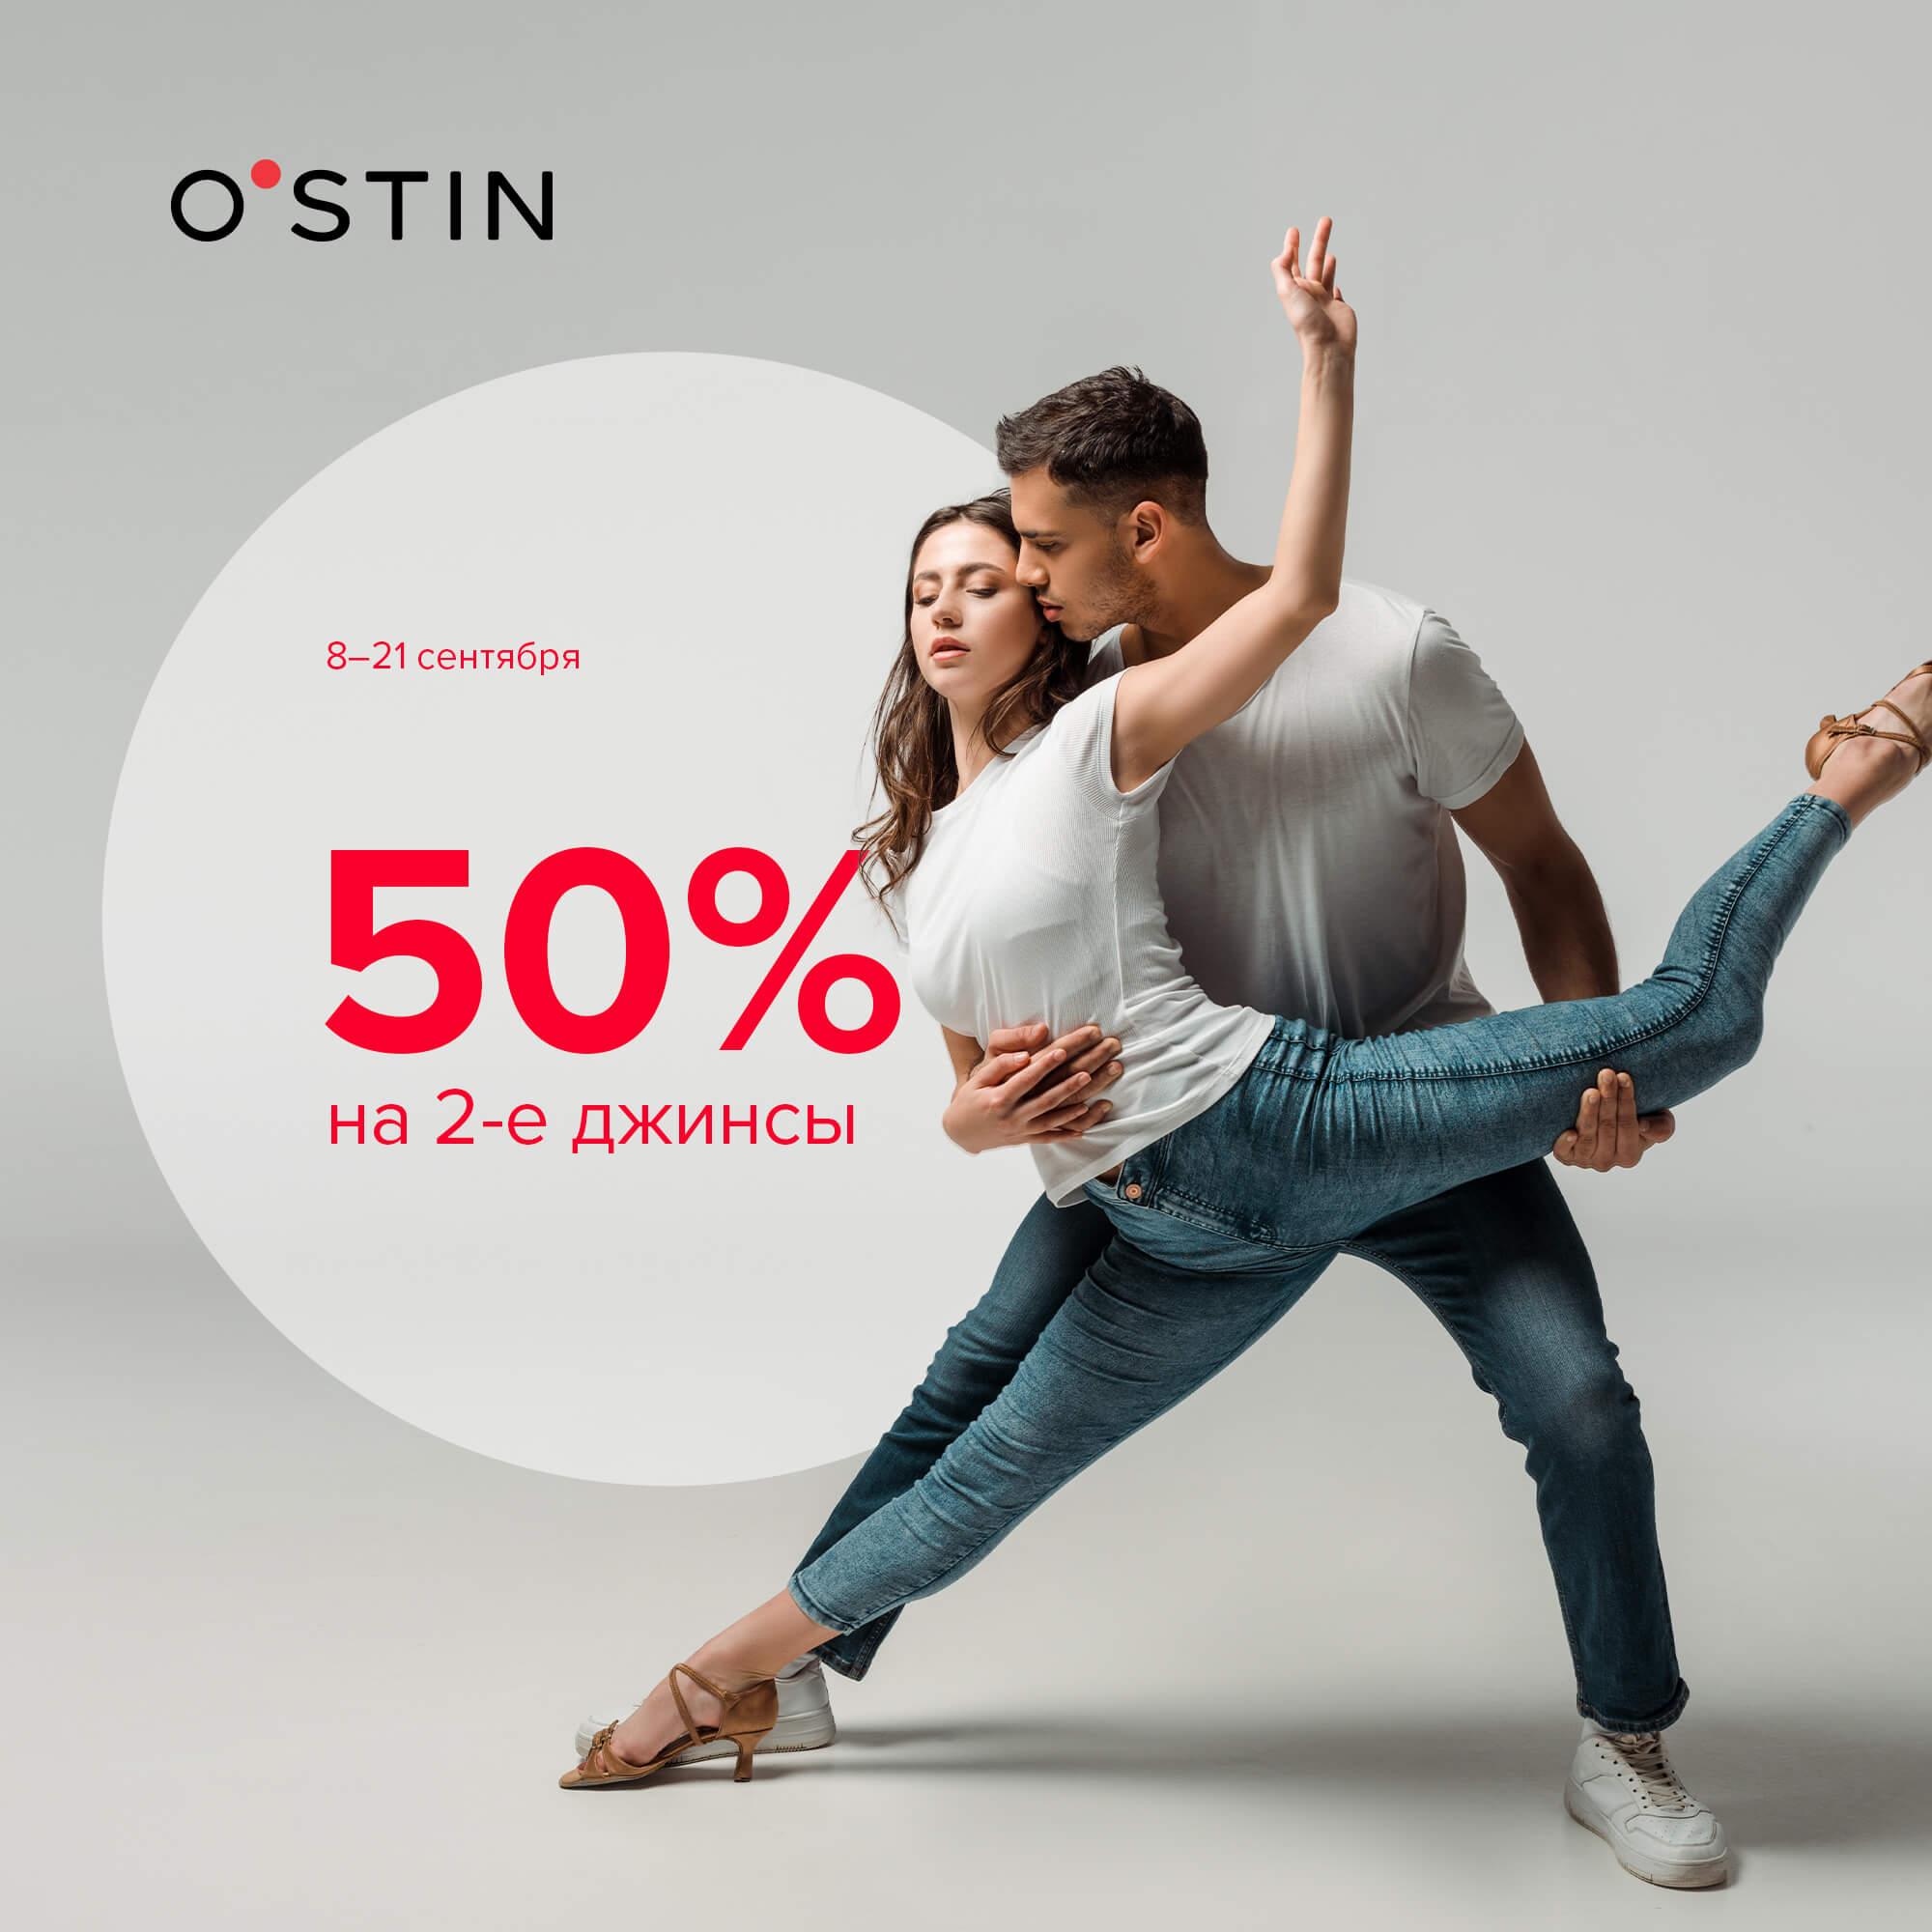 С 8 по 21 сентября в магазинах O’STIN действует акция: скидка 50% на вторые джинсы!